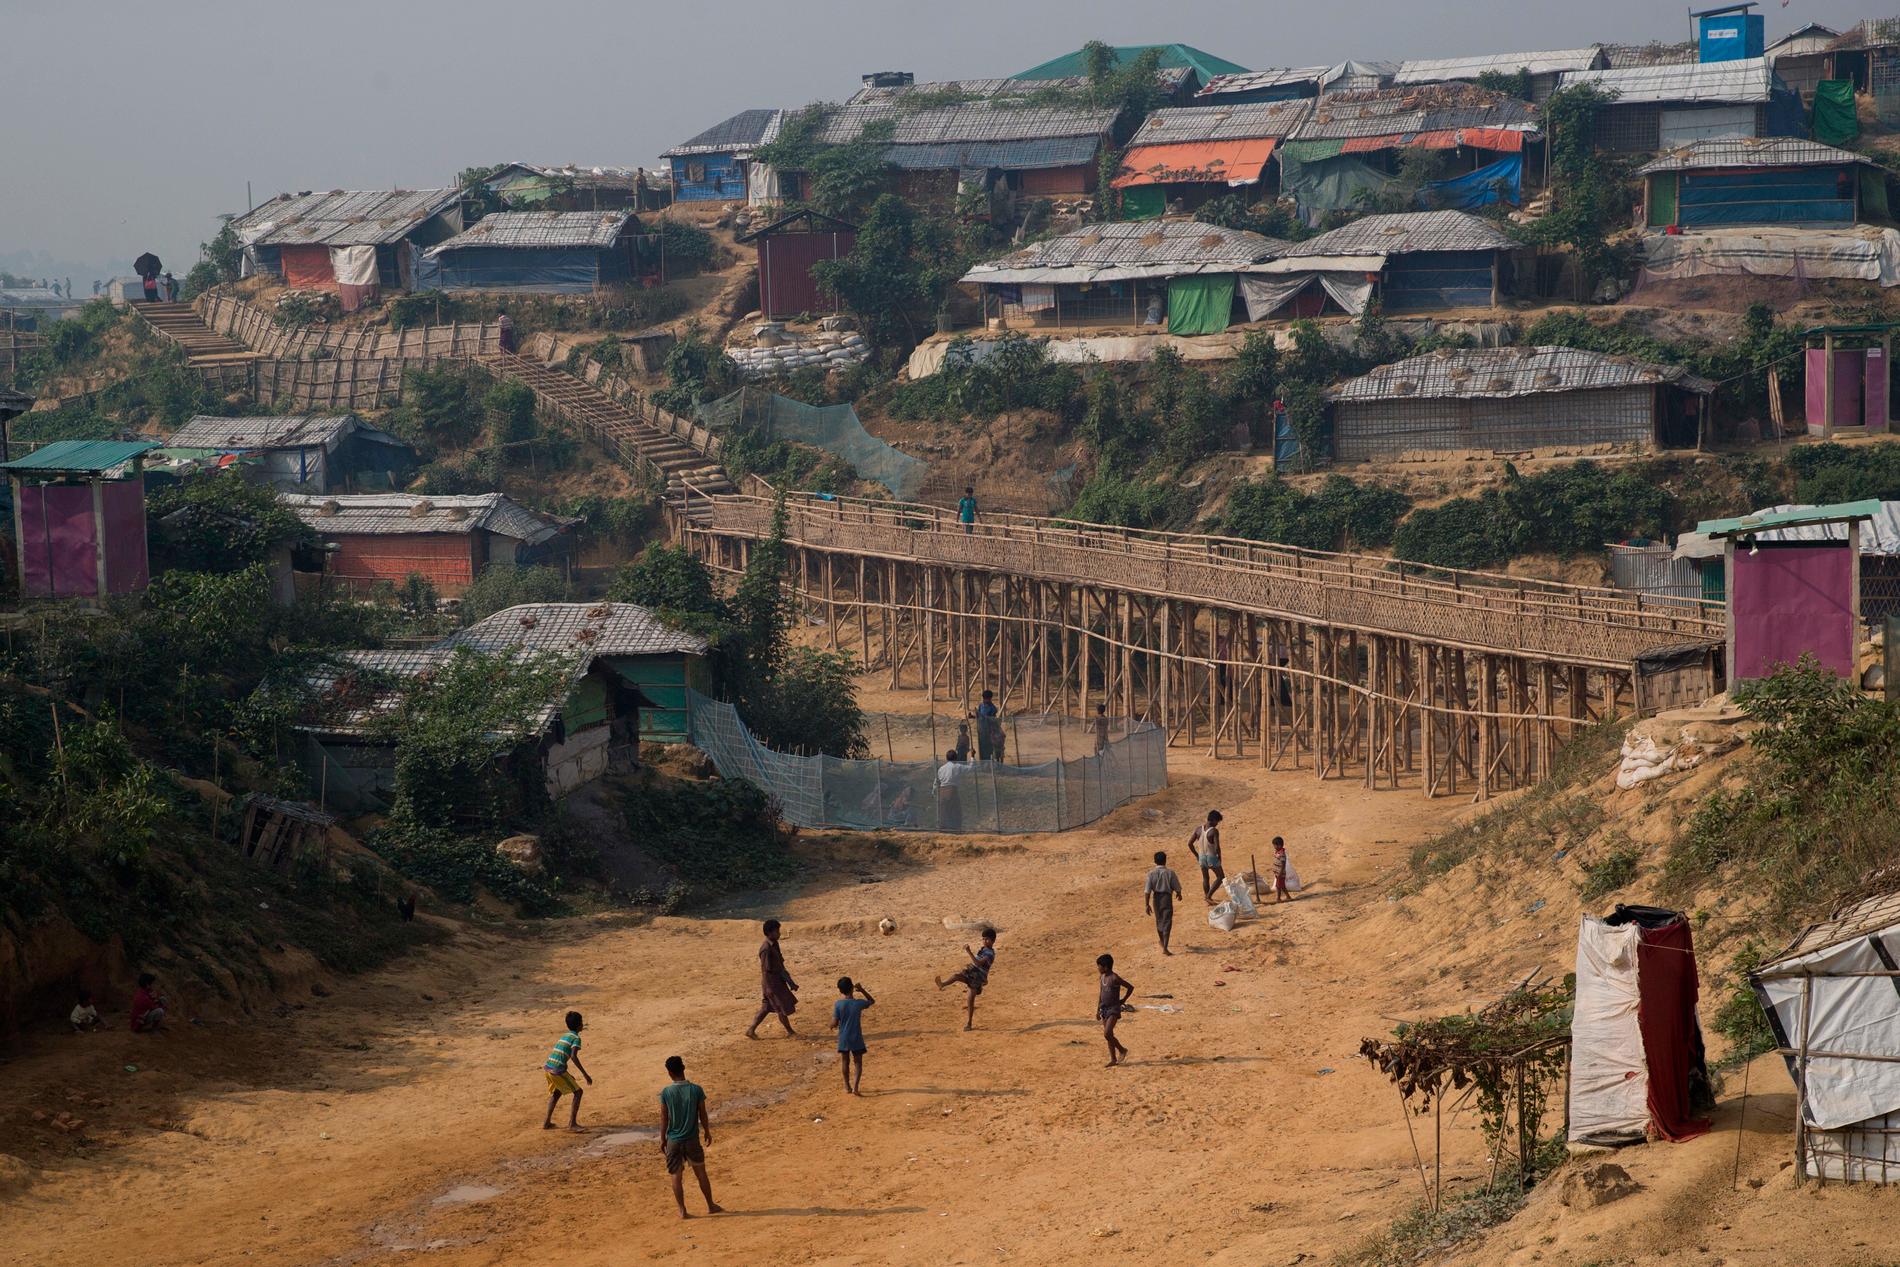 Pojkar spelar fotboll i ett flyktingläger i Bangladesh. Arkivbild från 2018.